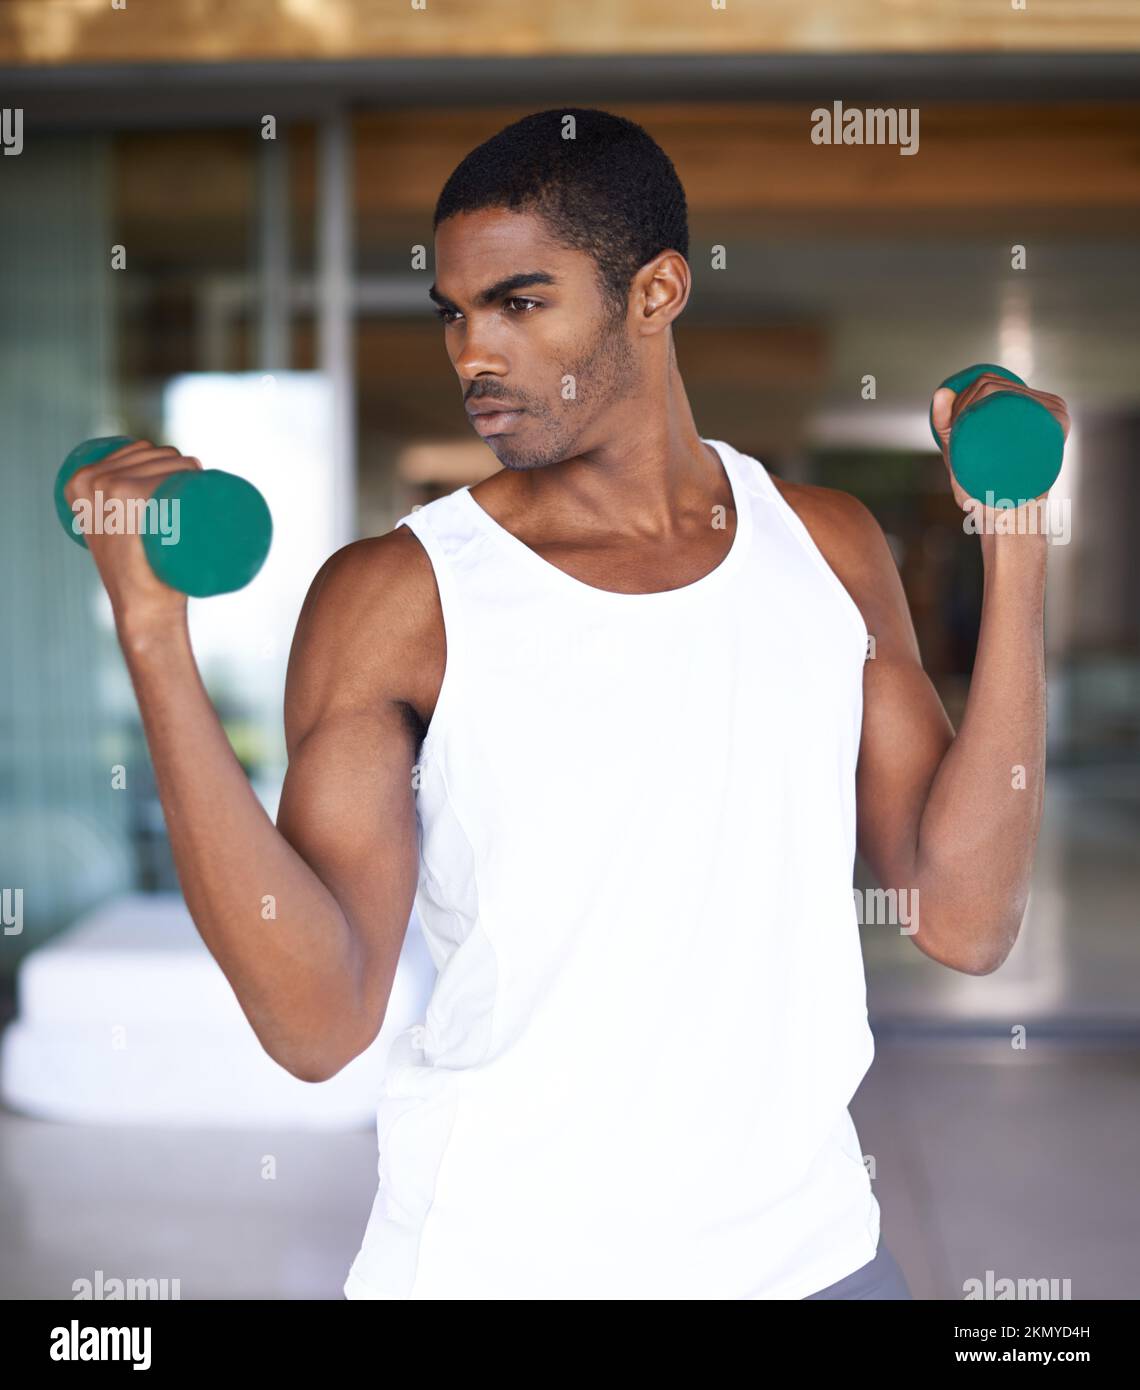 Dies ist seine Zeit zu tone. Ein Fitnessfoto eines jungen Mannes, der mit Gewichten straffte. Stockfoto